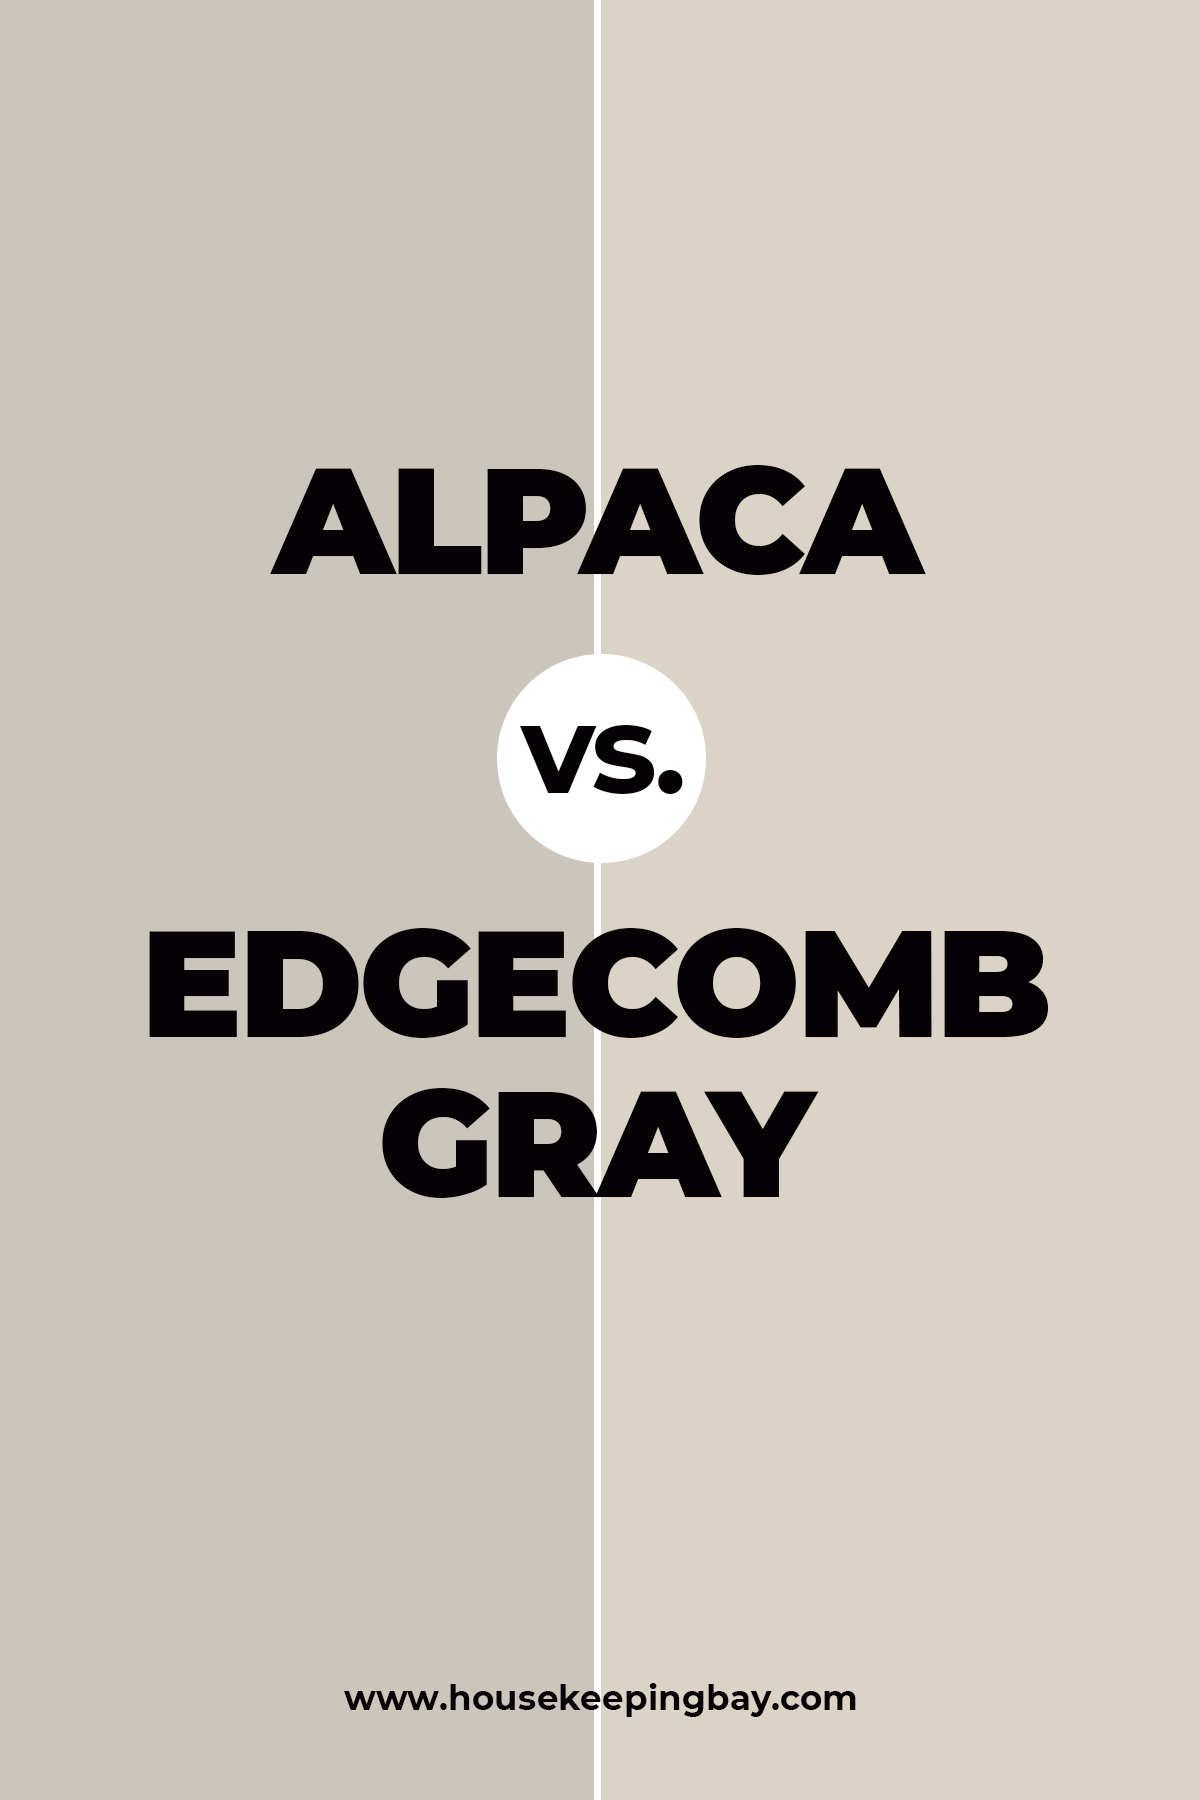 Alpaca vs. Edgecomb Gray